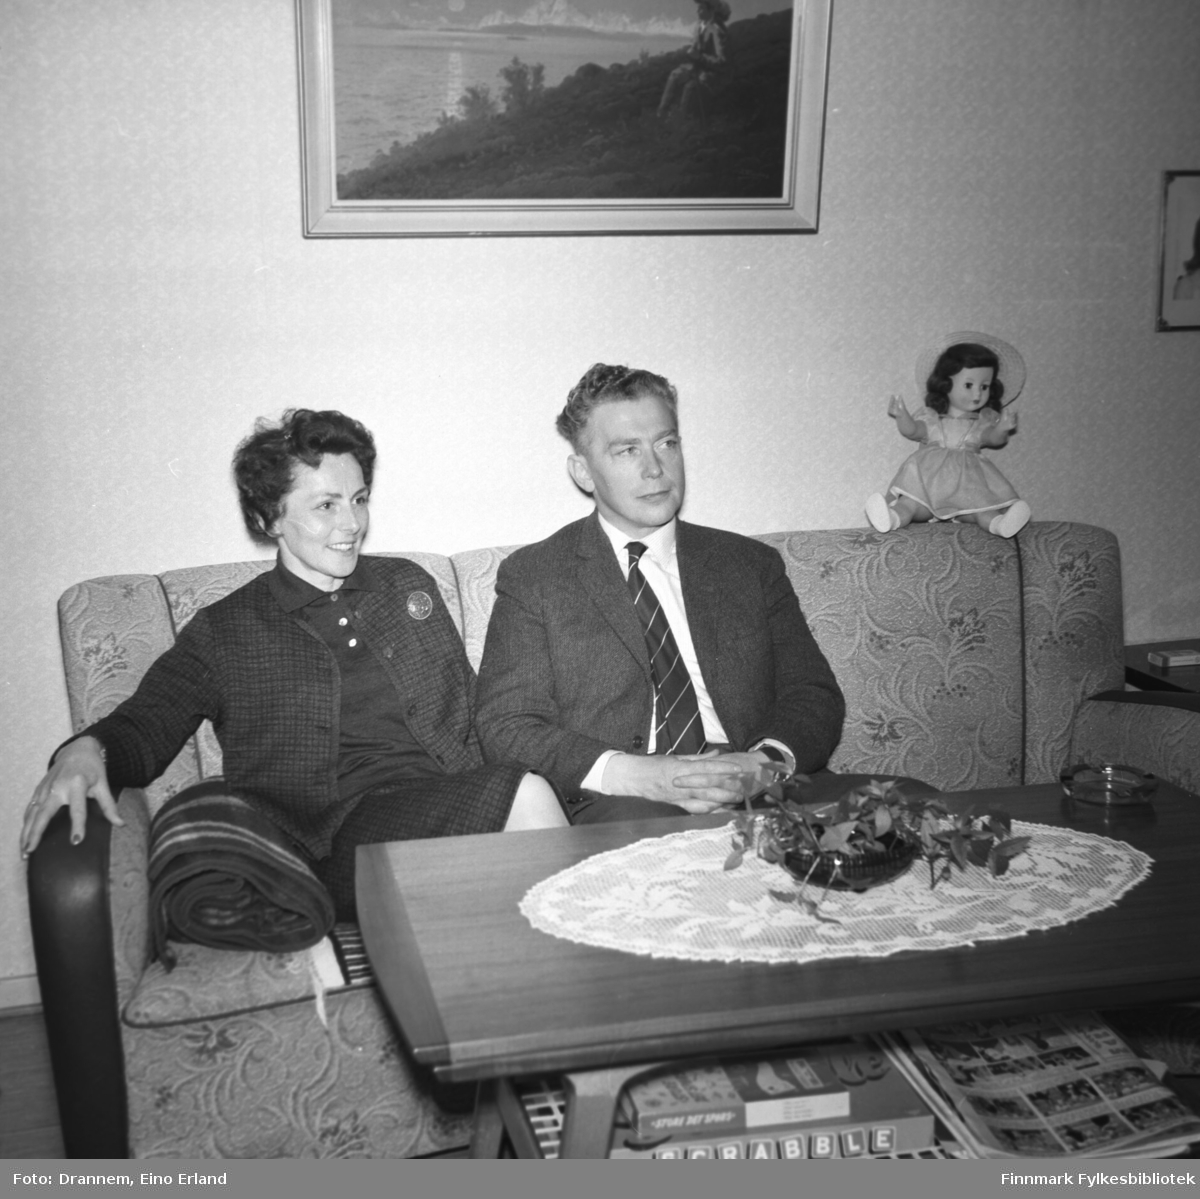 Berna og Kasper Gabrielsen fotografert i stua hos familien Drannem.